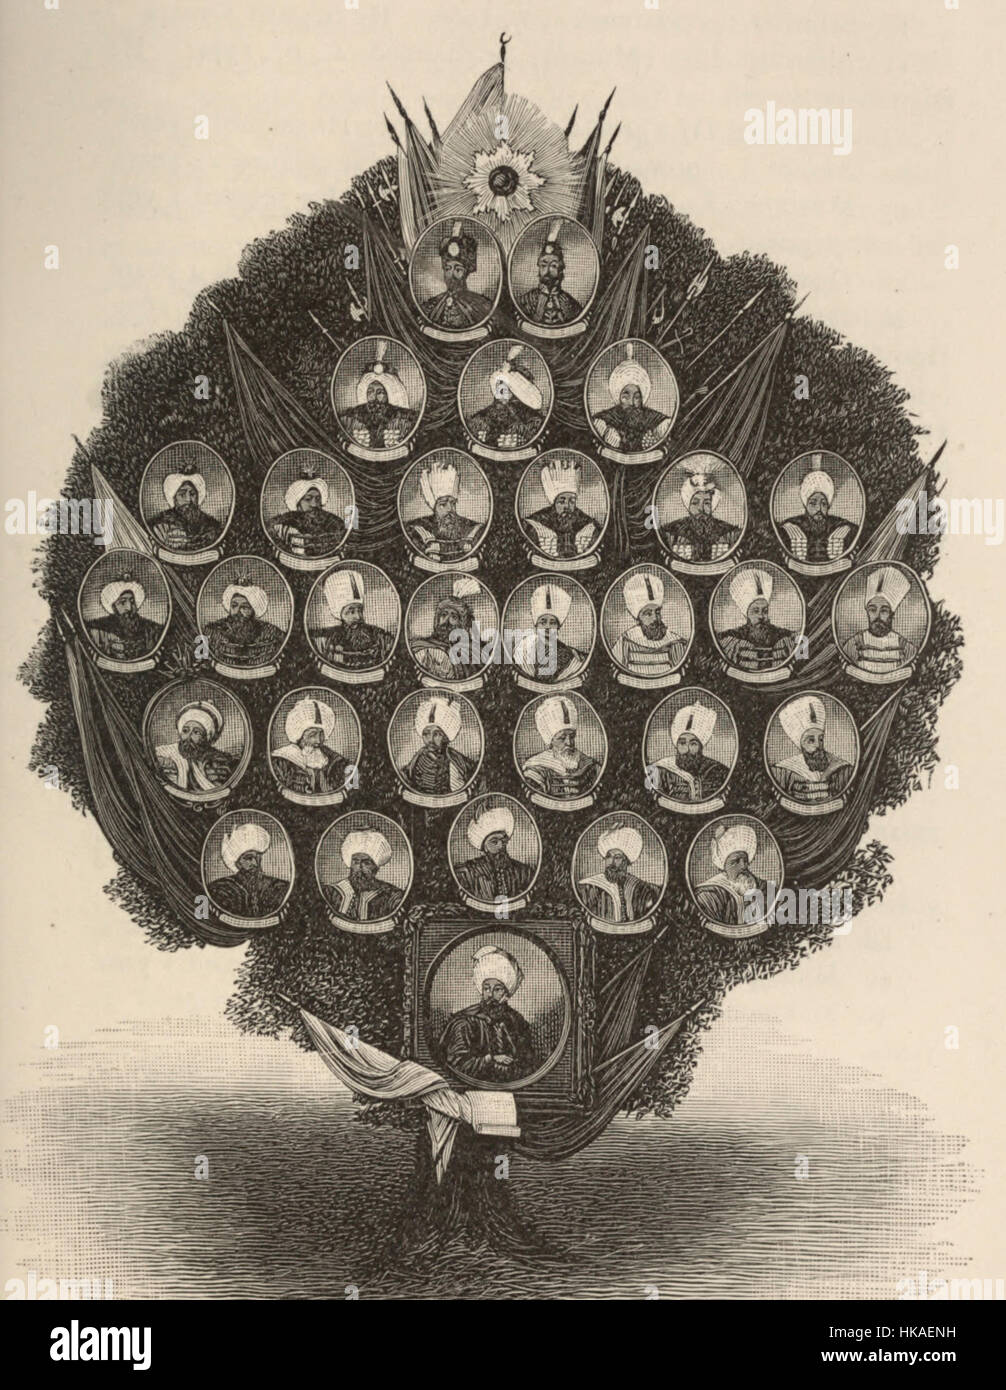 Albero genealogico dei righelli Ottomano, circa 1887 Foto Stock